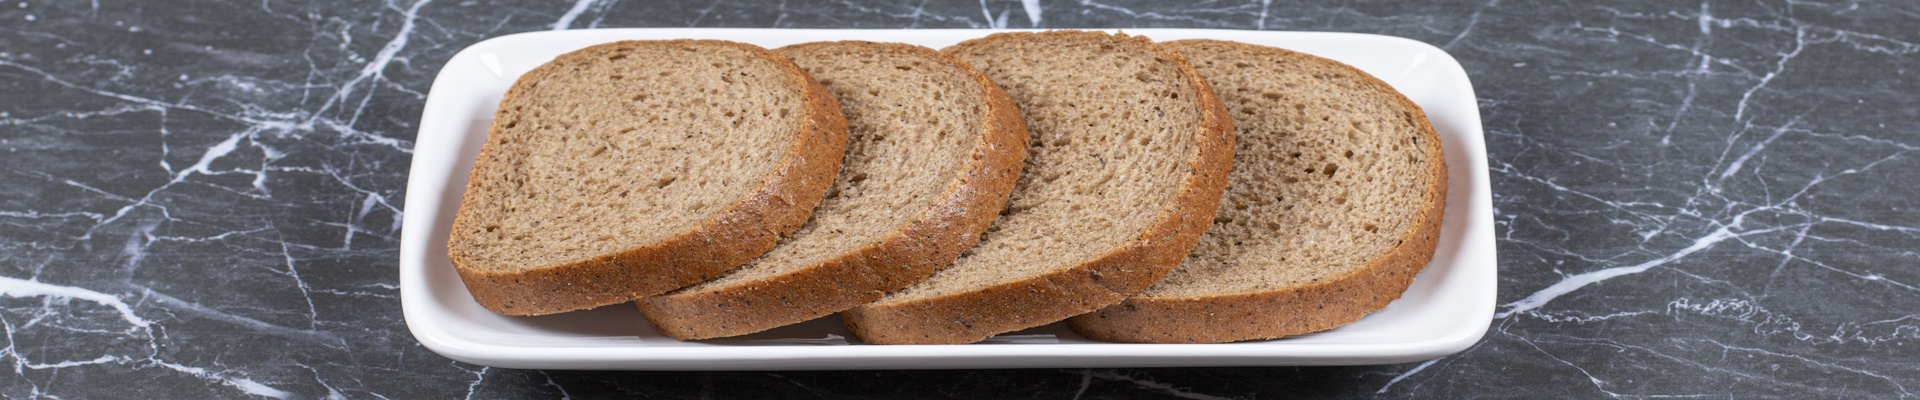 לחם טחינה וסילאן ללא גלוטן